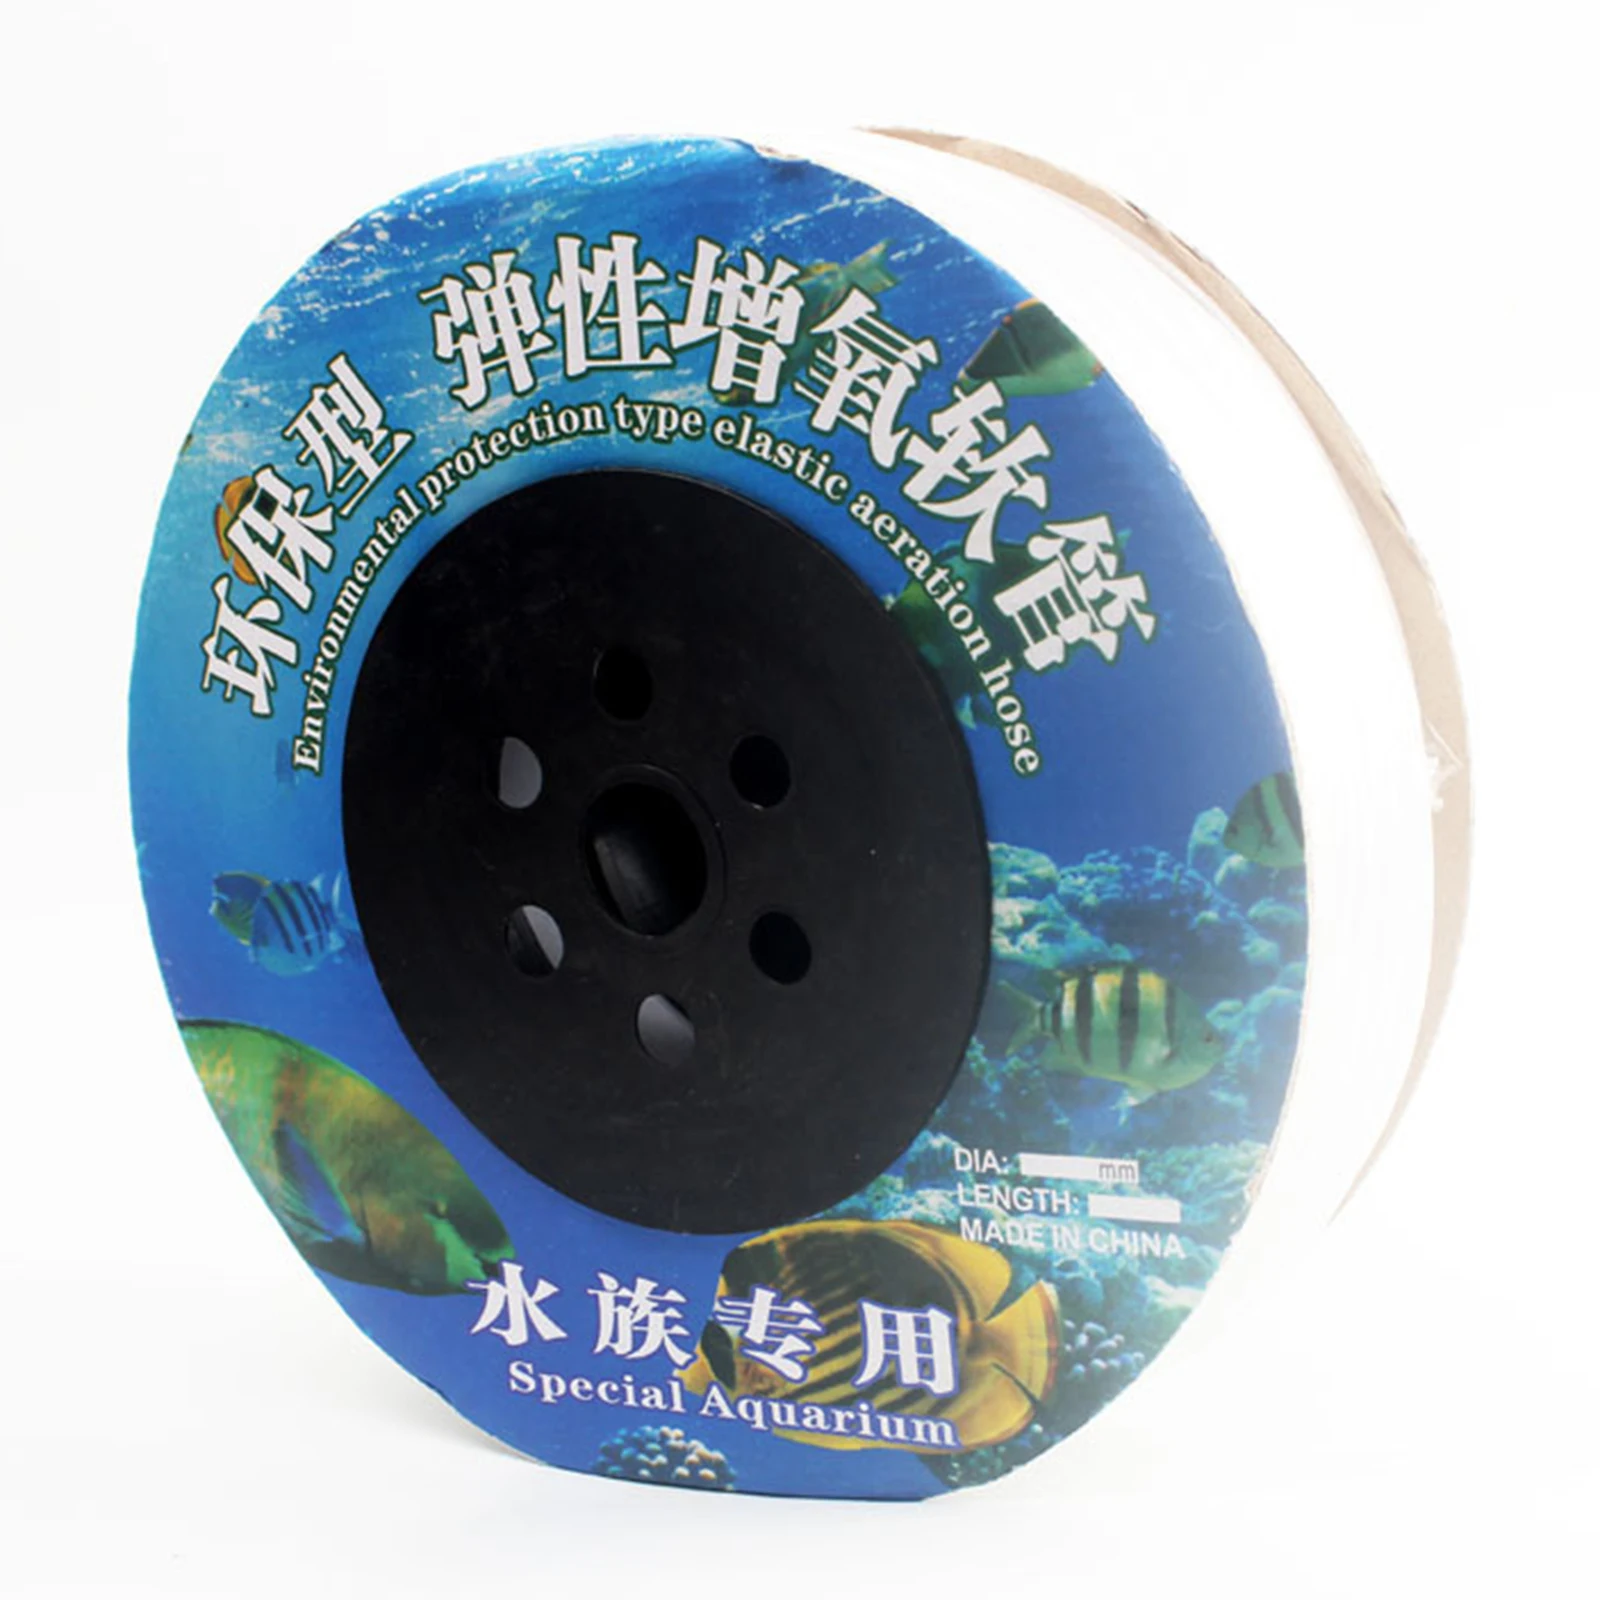 Fish Tank Aquarium Clear Soft Air Pump Oxygen Hose Air Bubble Stone Air Line Tube Aquatic Animal Supplies Accessories